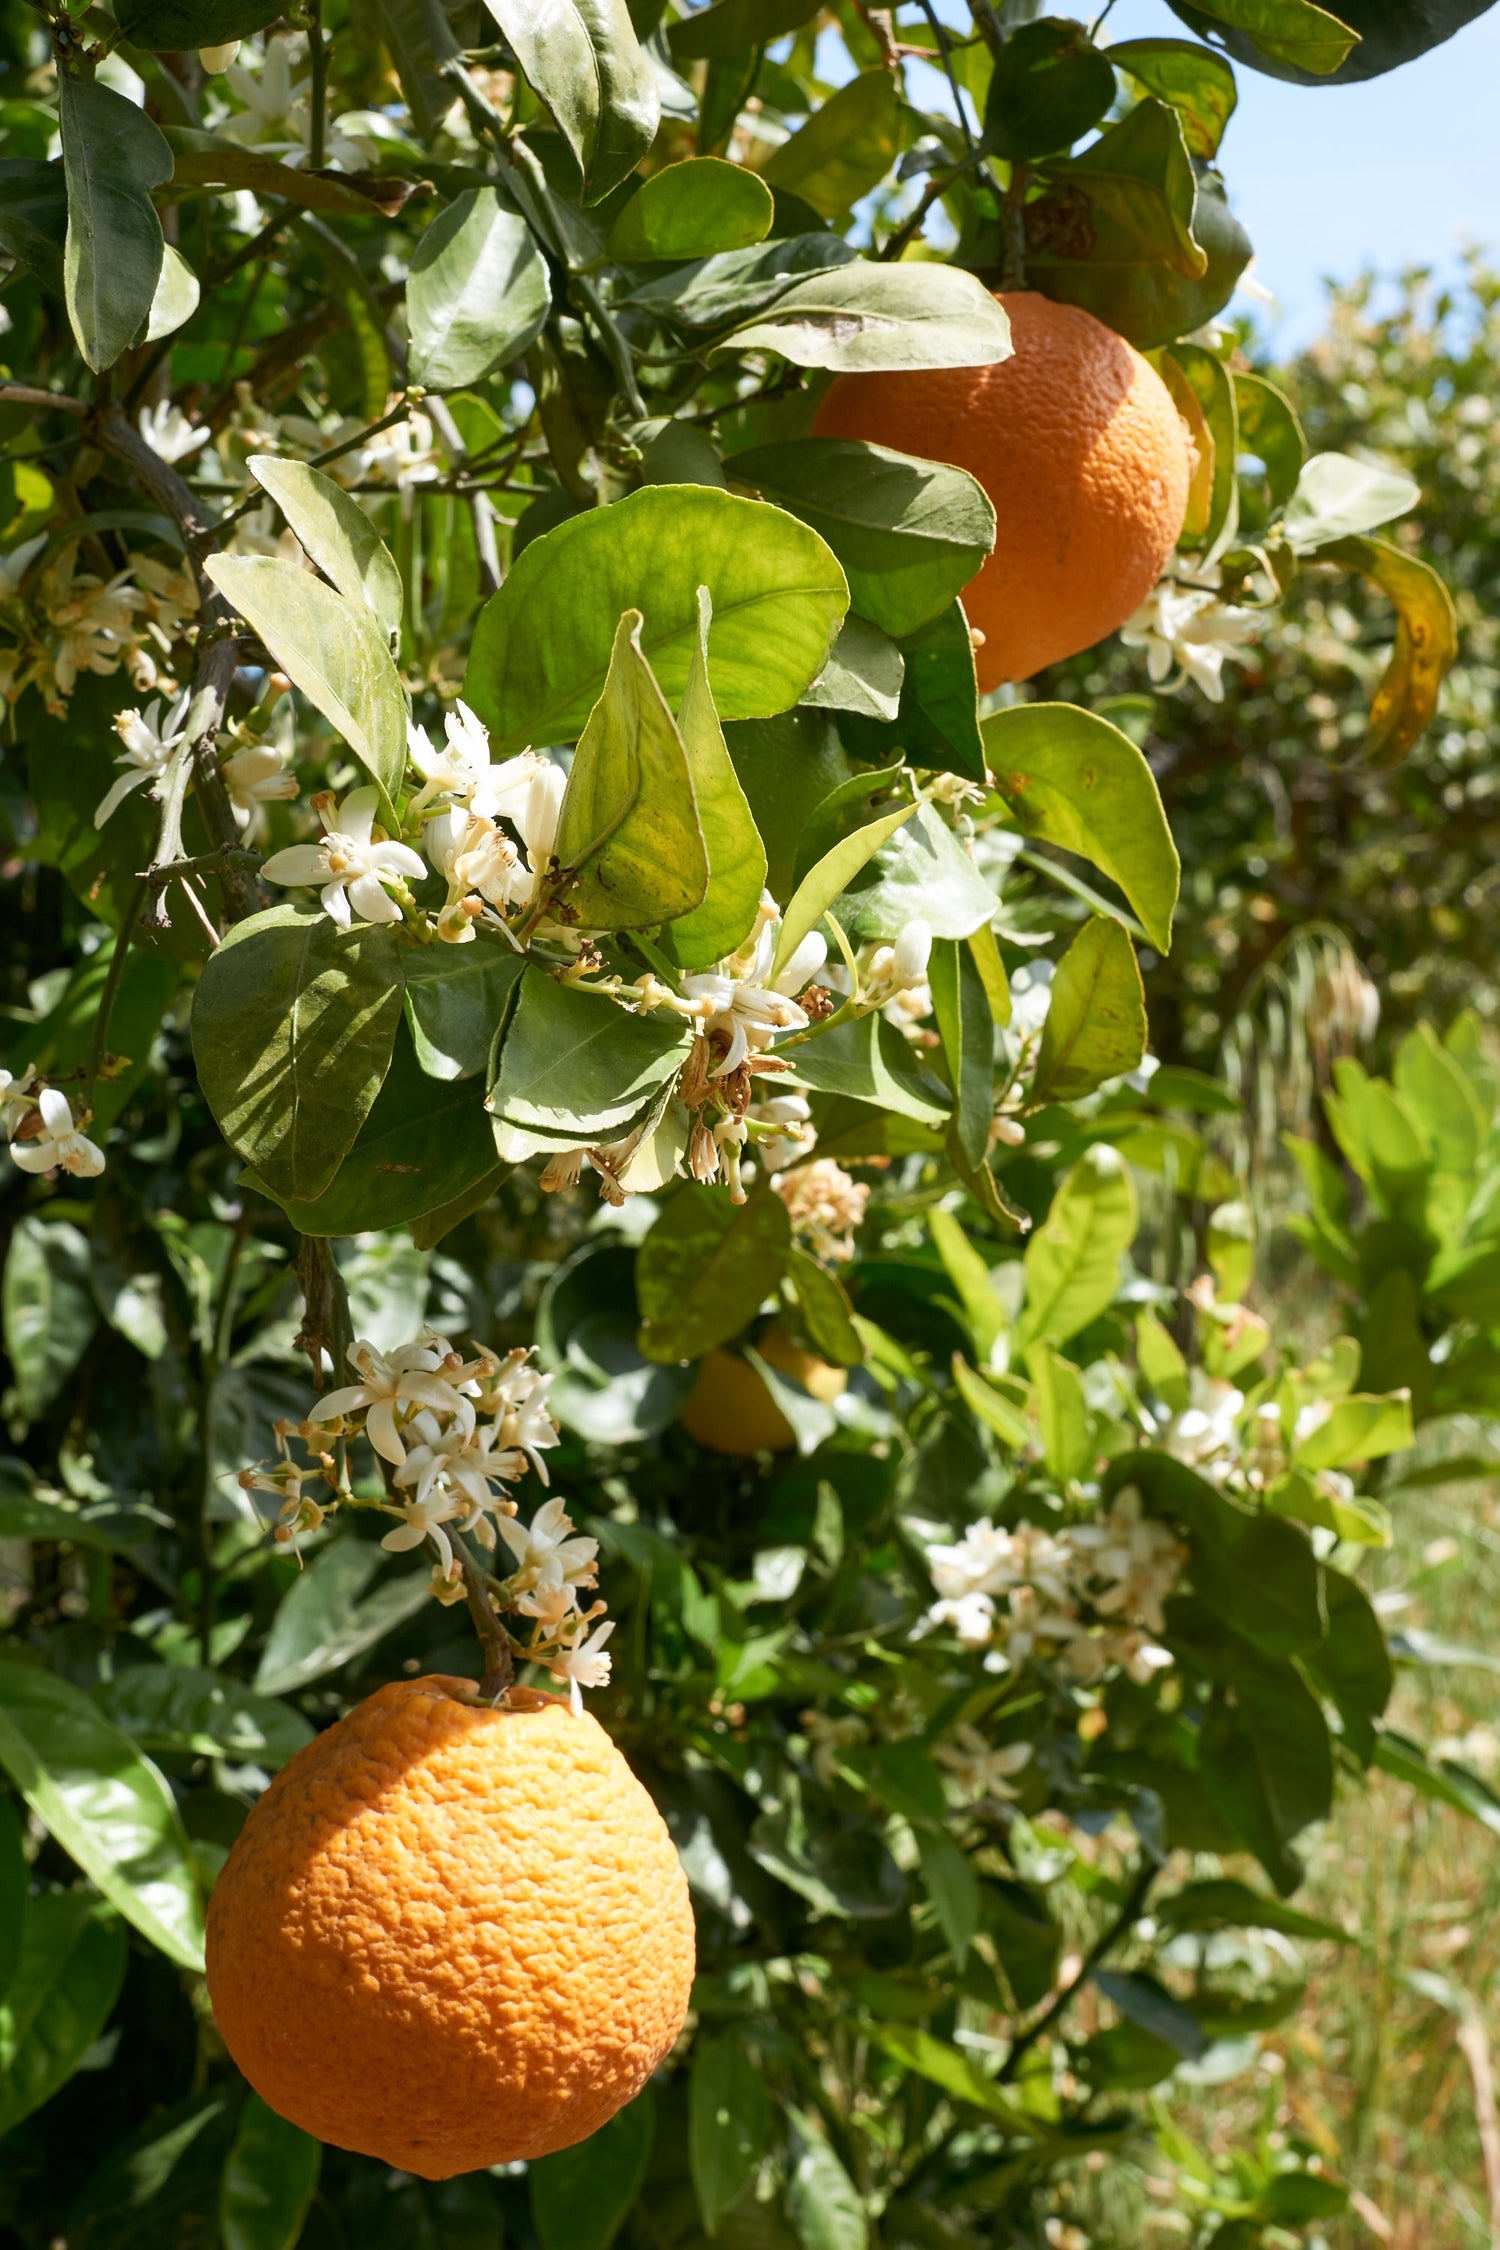 #MittelmeerMontag - Ricette all'arancia